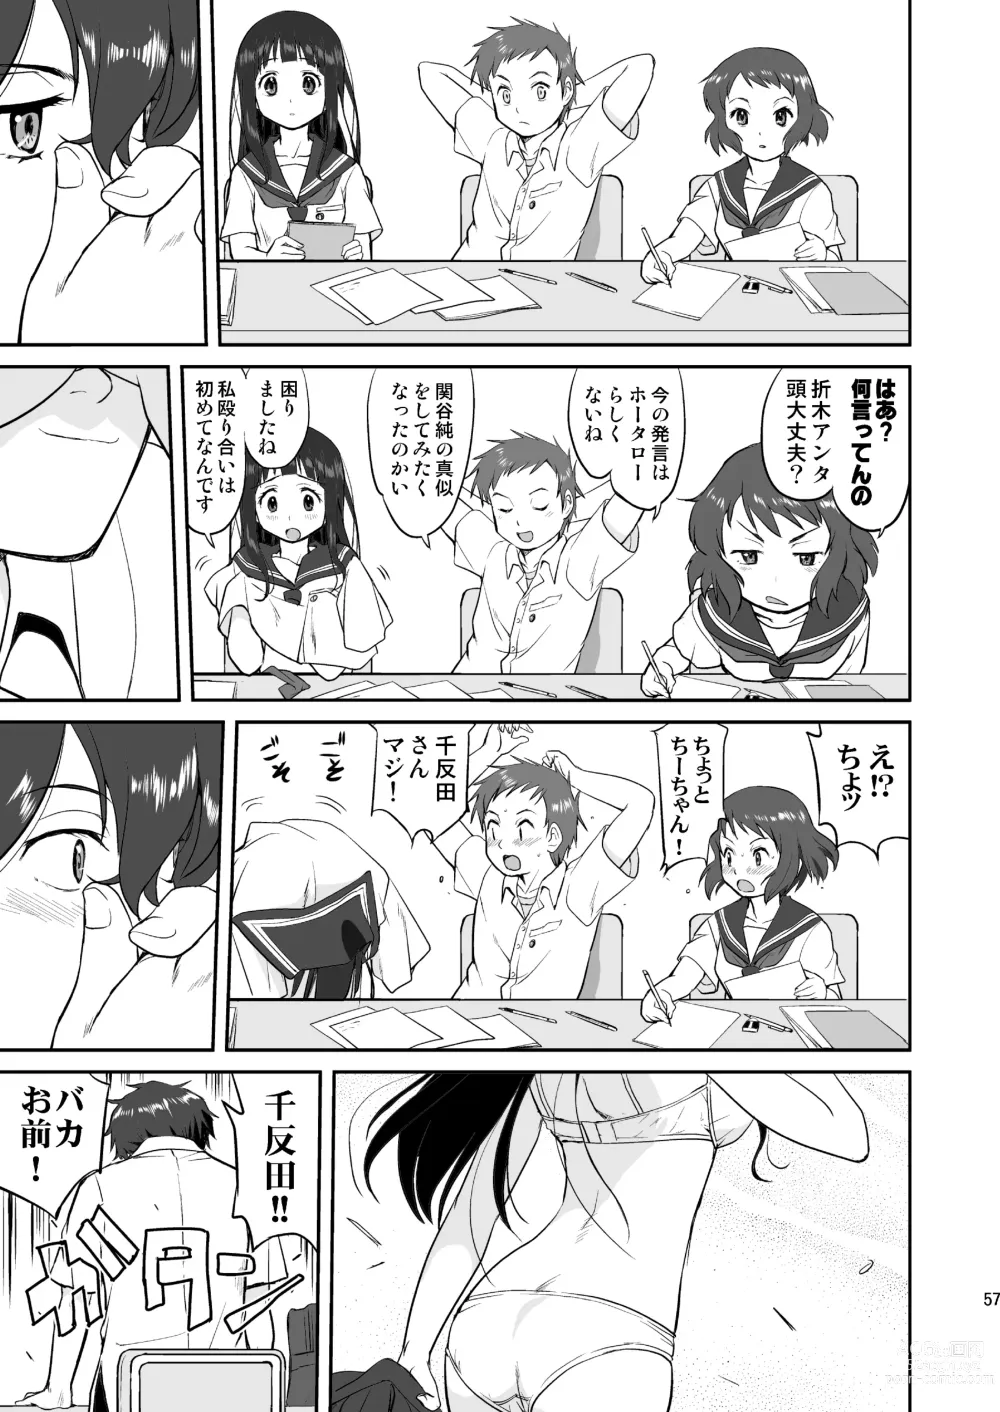 Page 57 of doujinshi Hikari no Ame